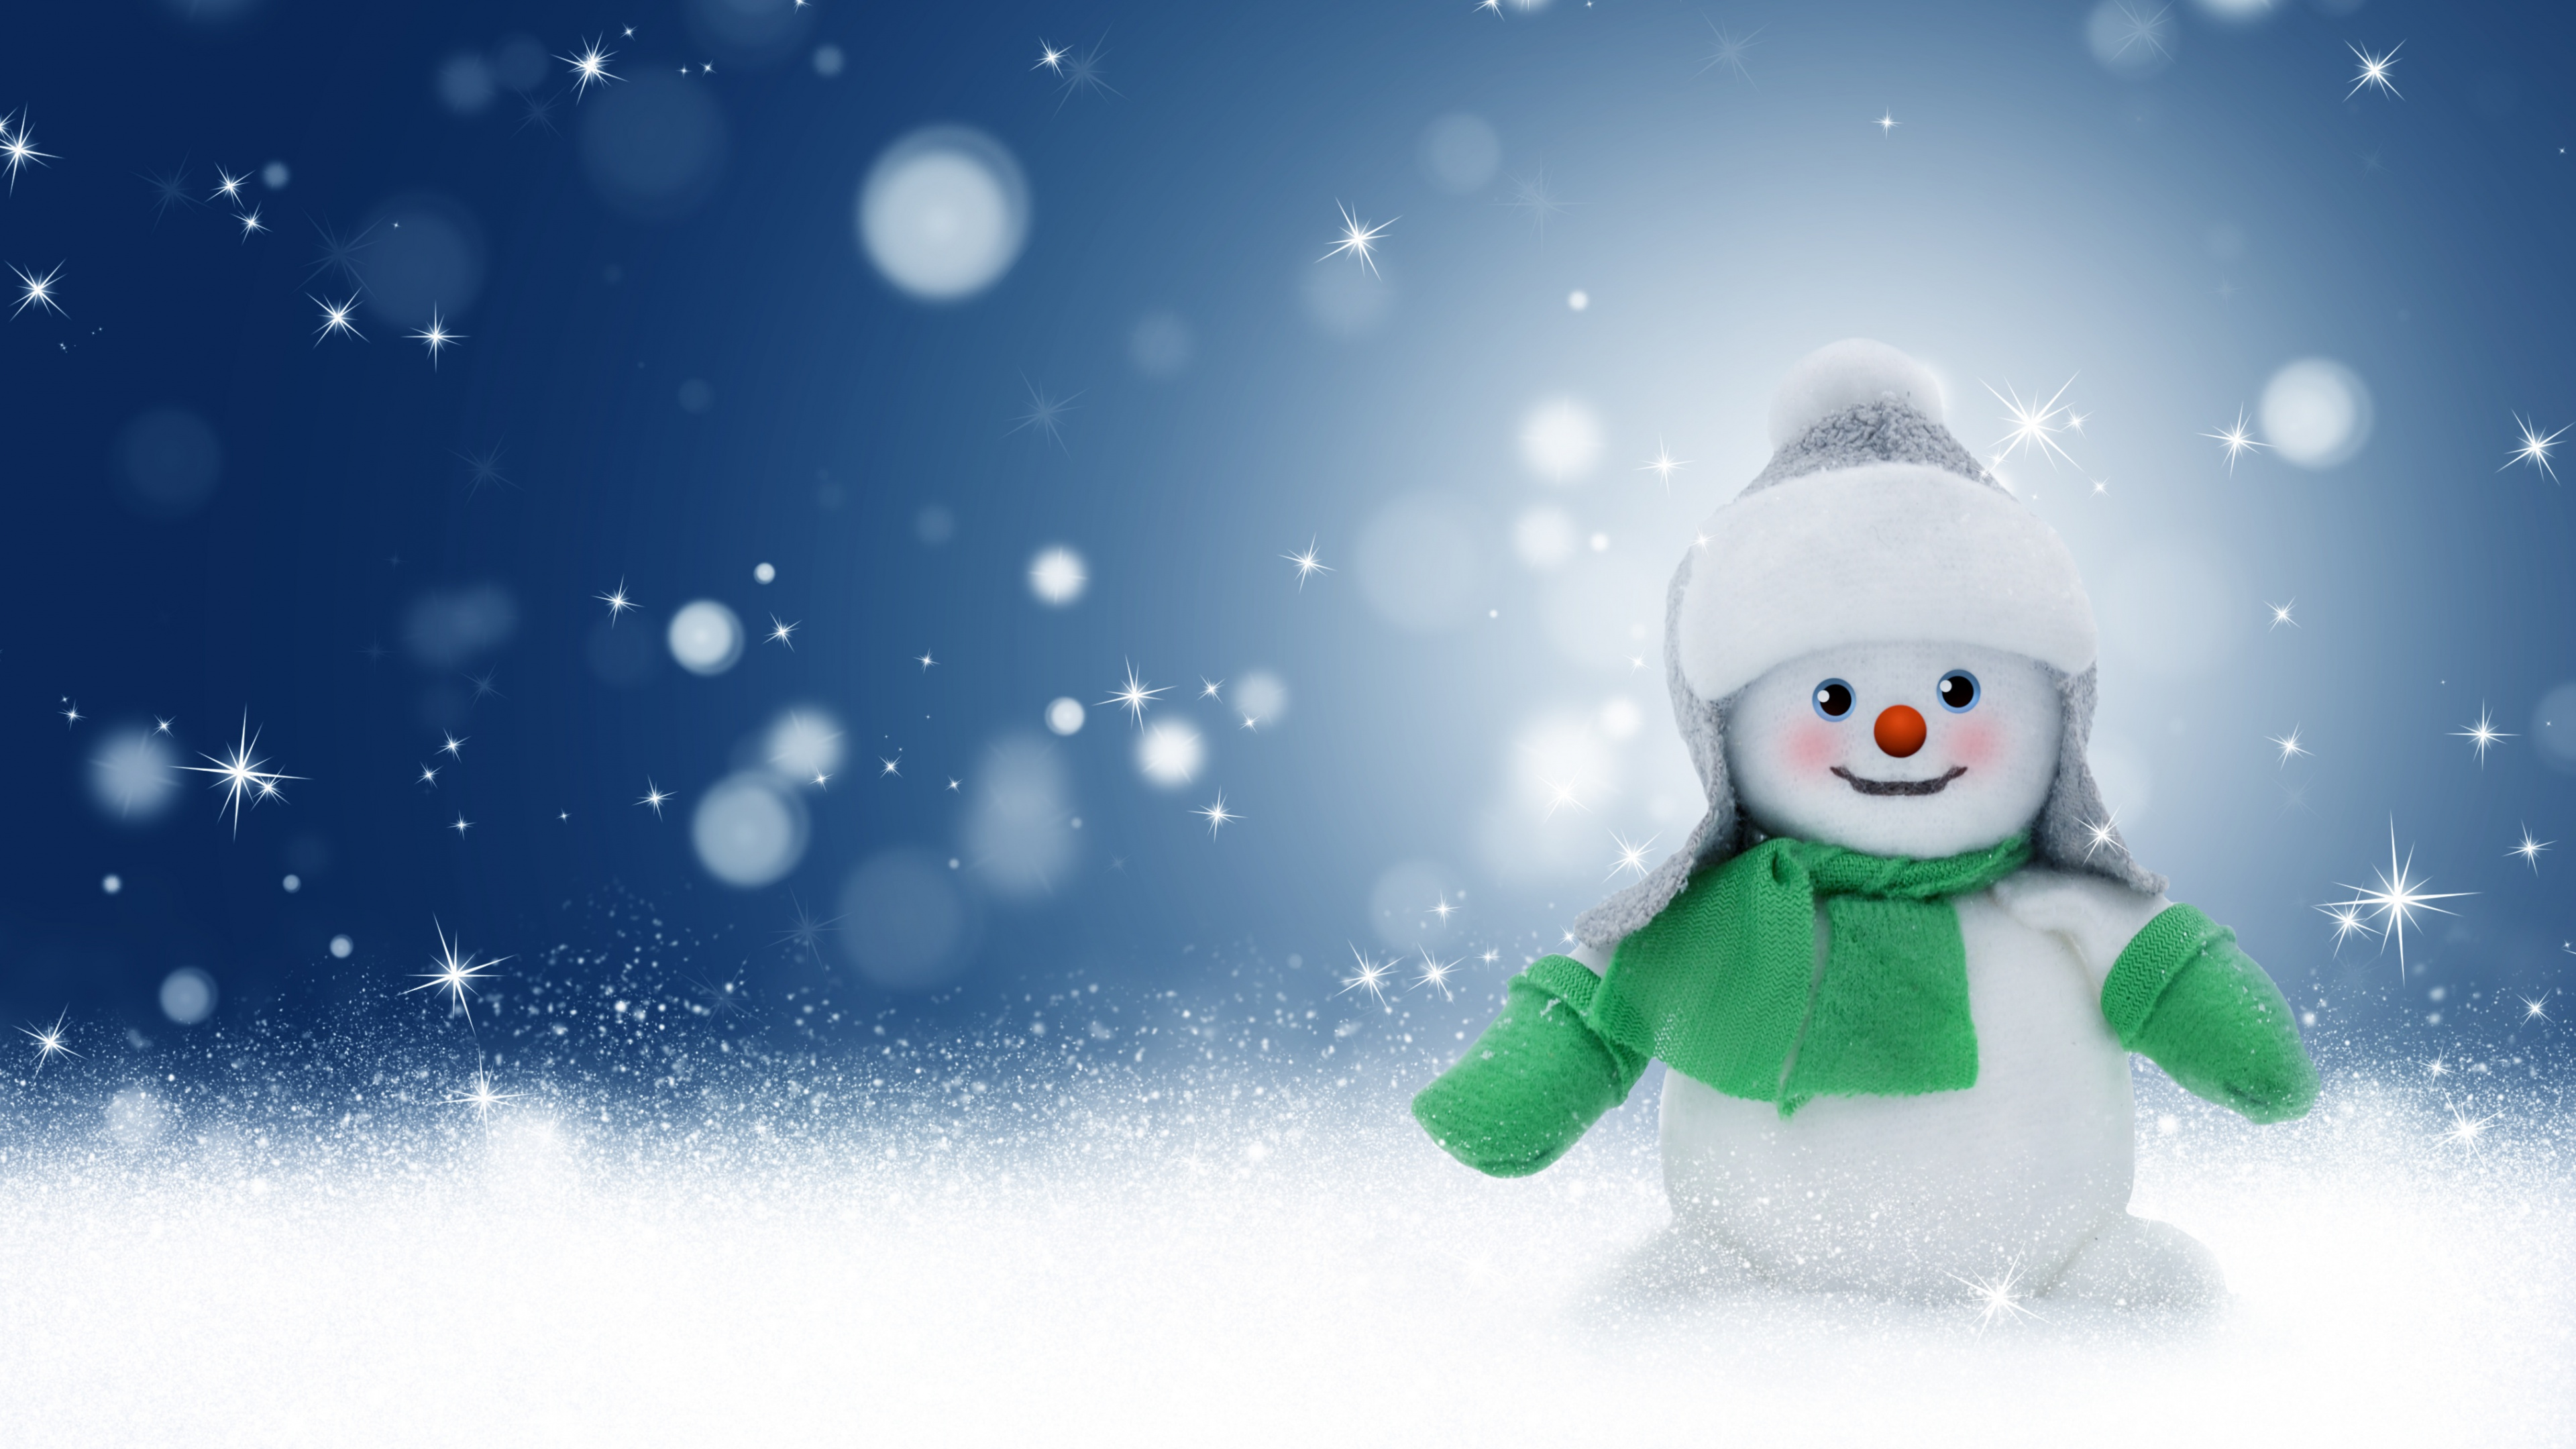 圣诞节那天, 冬天, 雪人, 圣诞前夕, 冻结 壁纸 3840x2160 允许